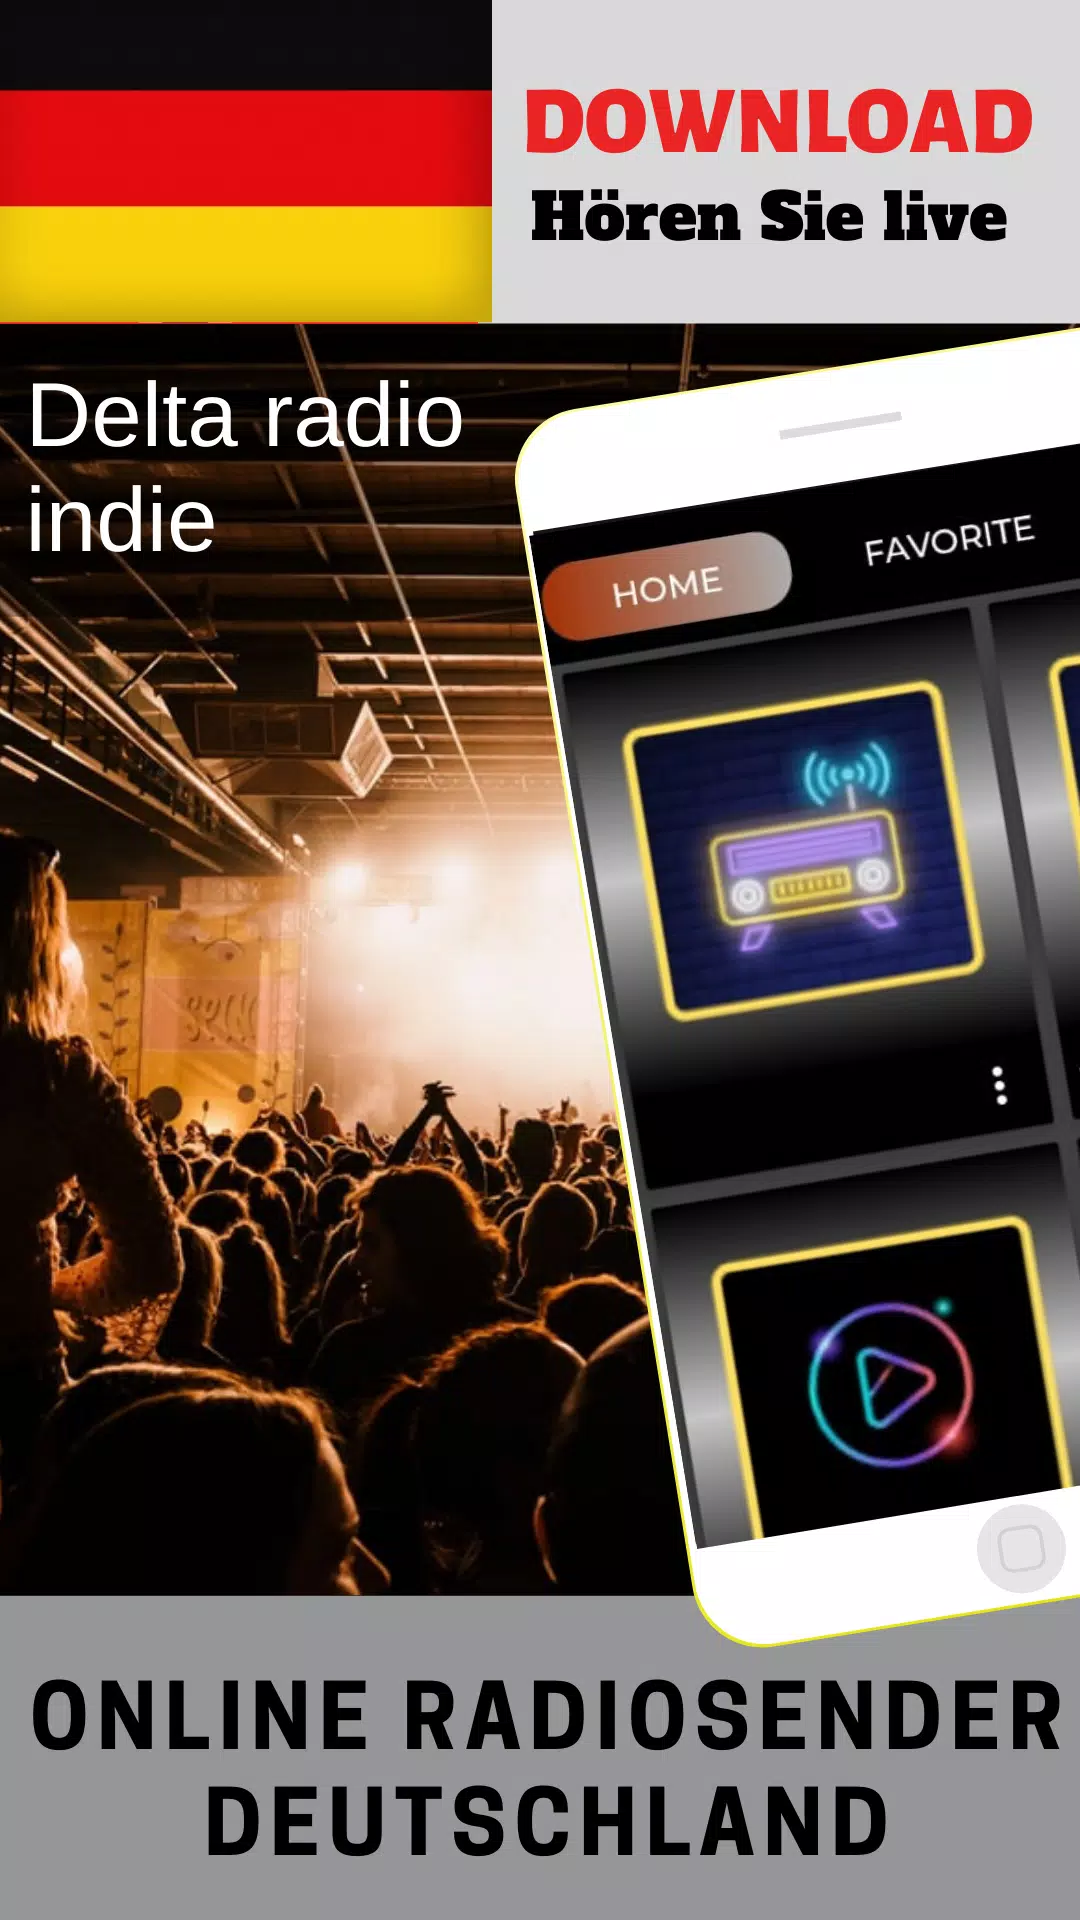 Delta radio indie APK pour Android Télécharger